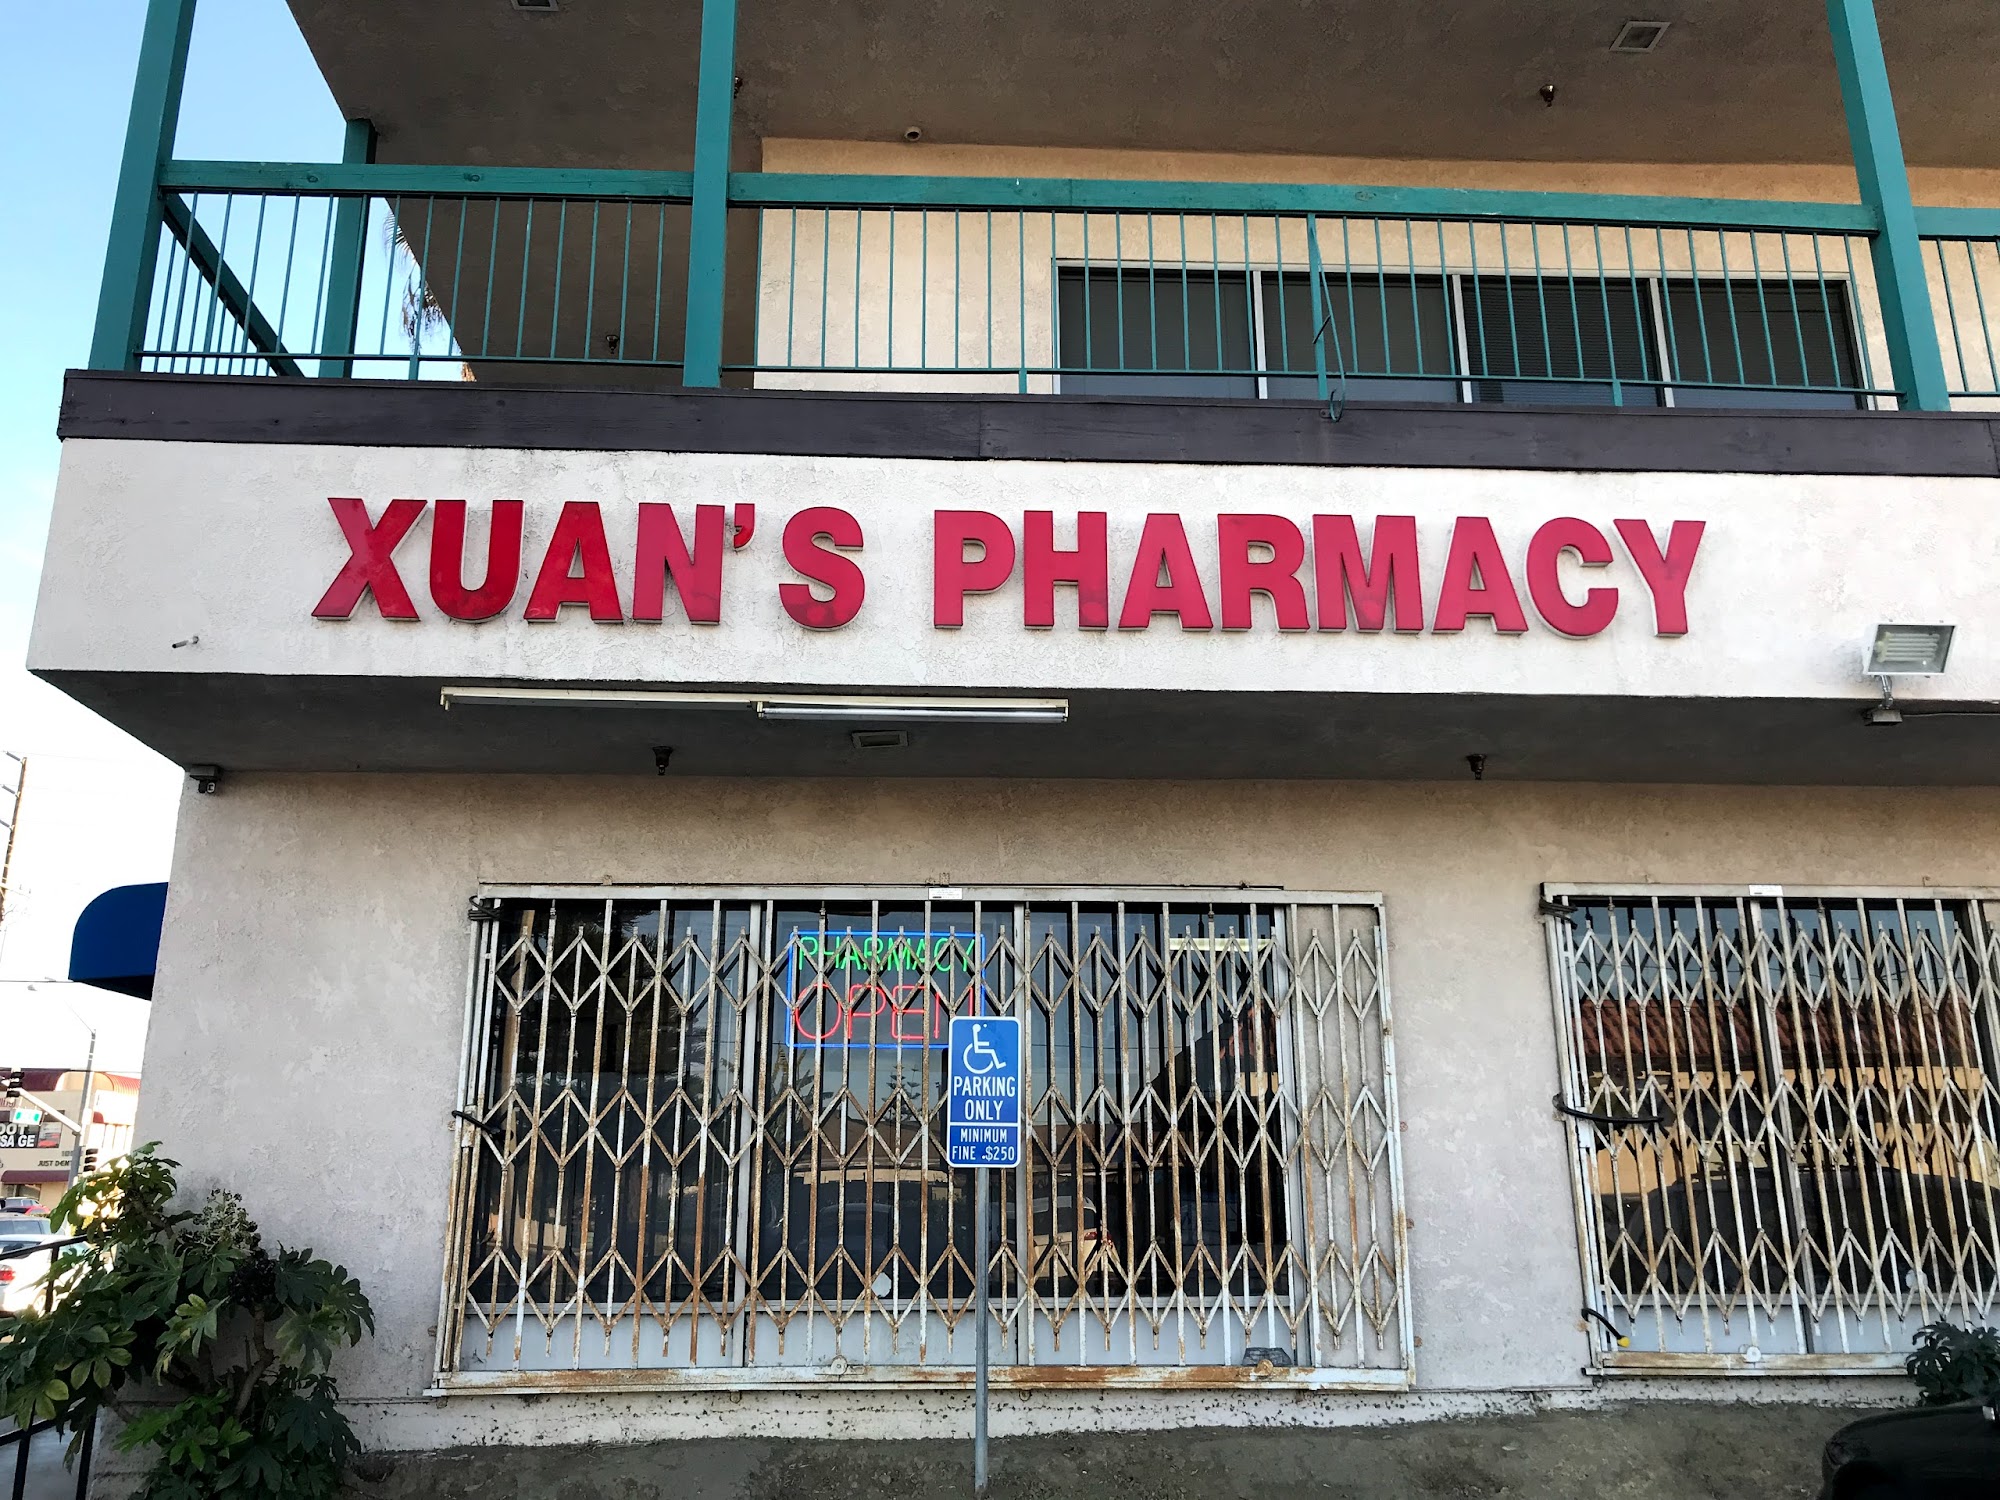 Xuan's Pharmacy